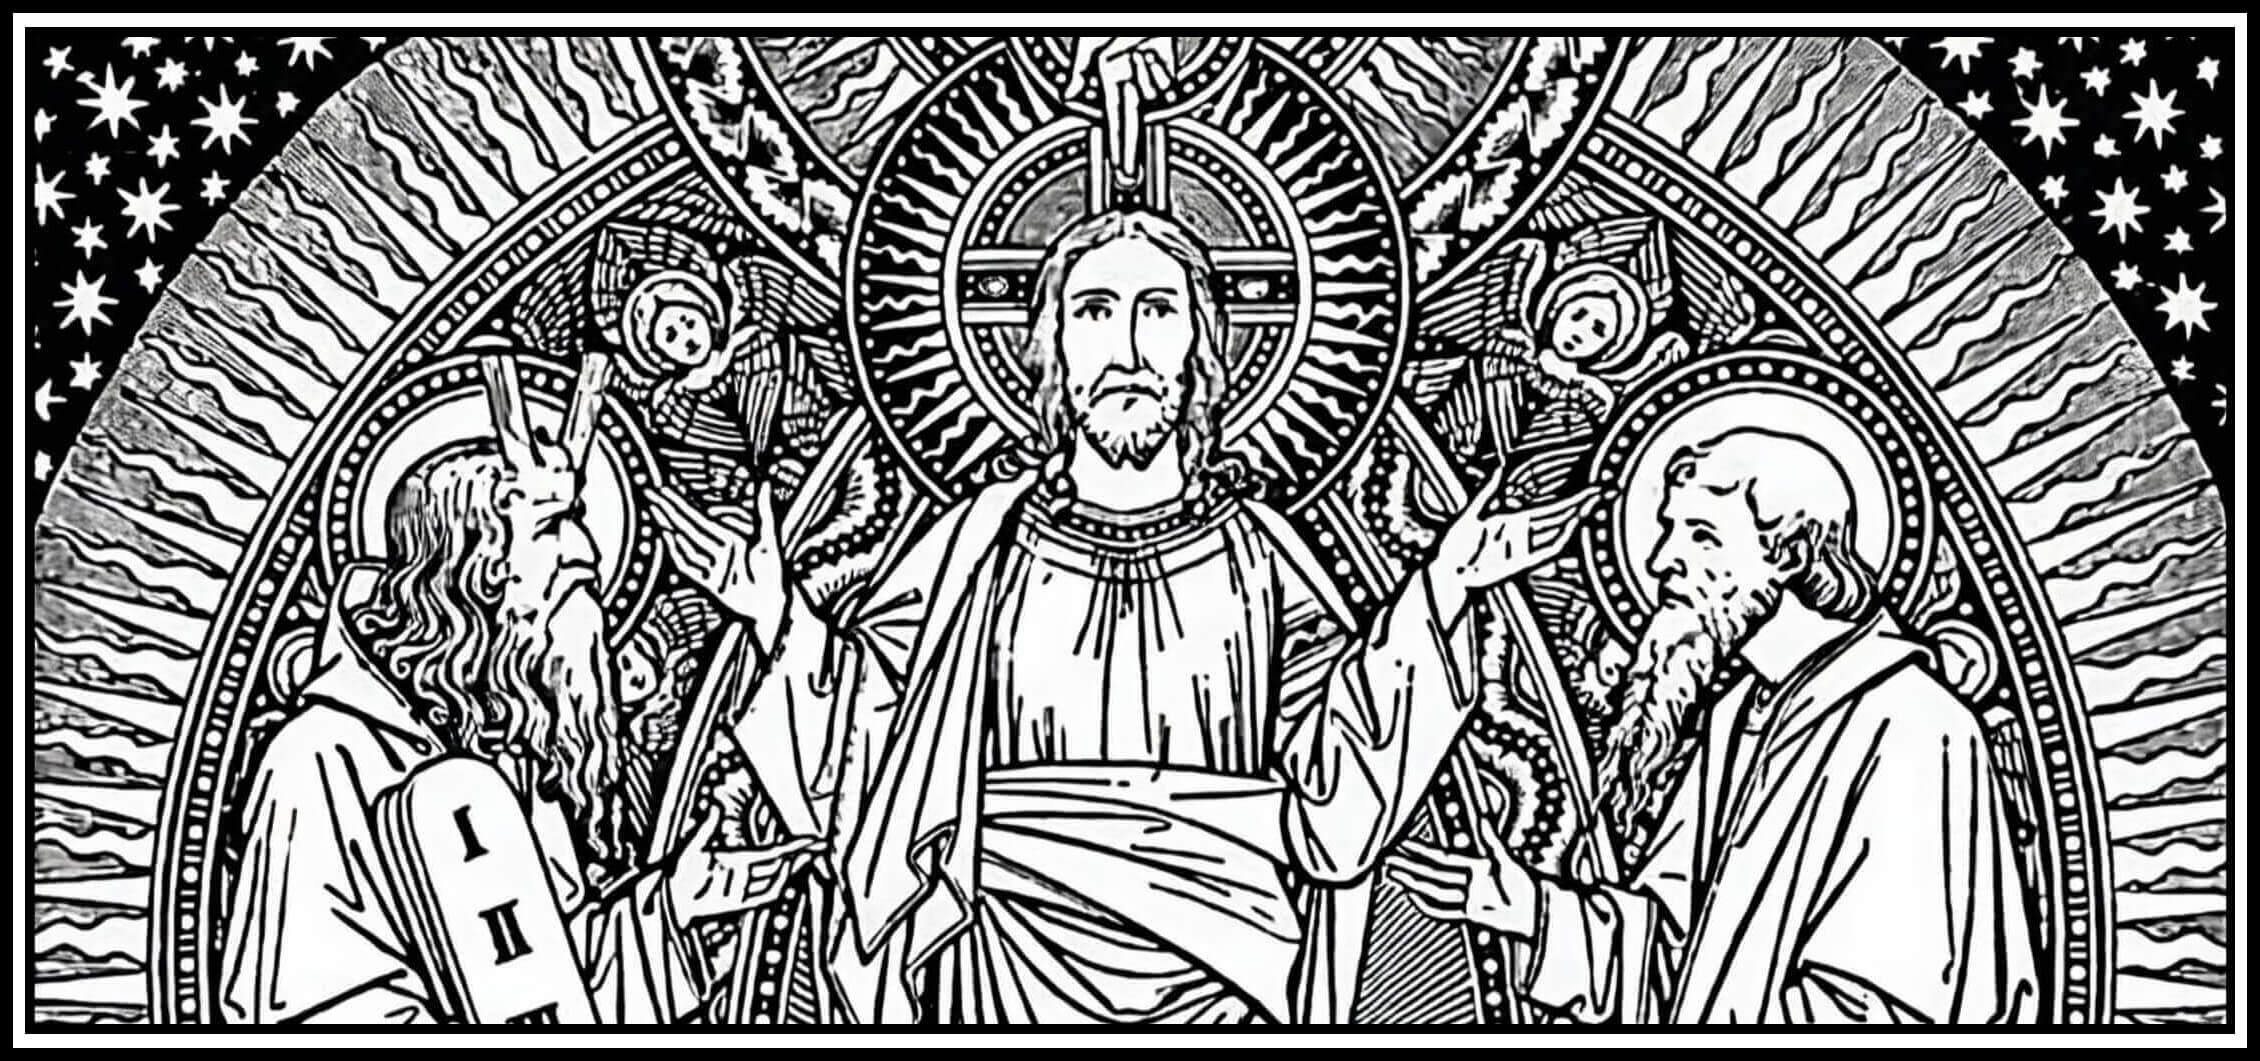 Nuestro Señor Jesucristo se aparece transfigurado entre Moisés y Elías